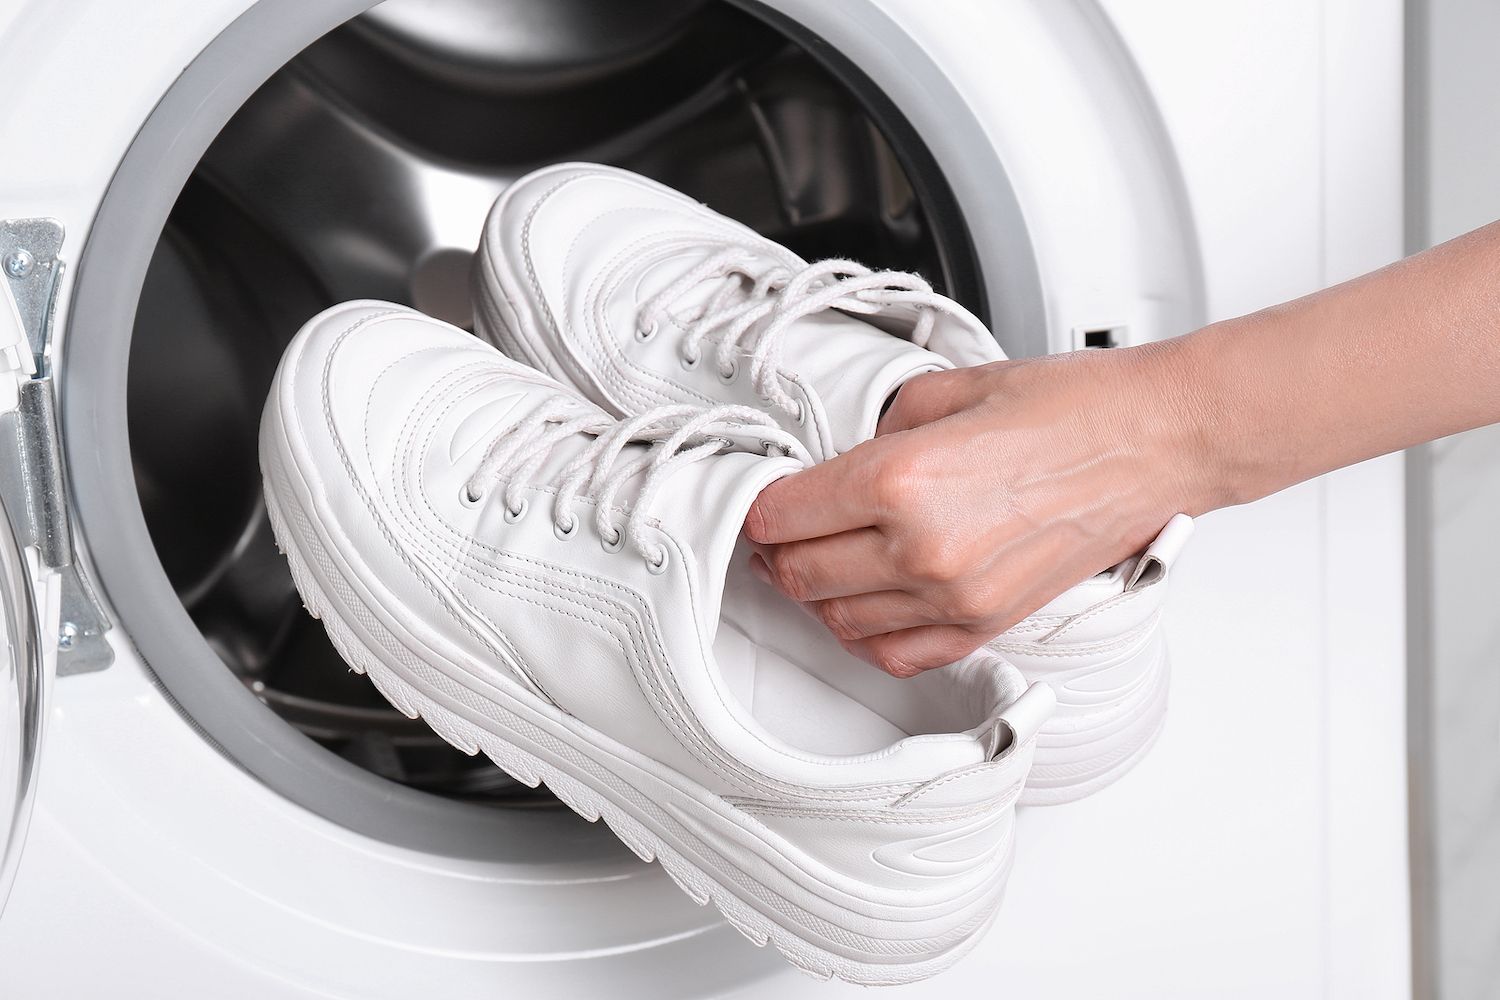 Cómo lavar zapatillas y zapatos en la lavadora sin estropearlos